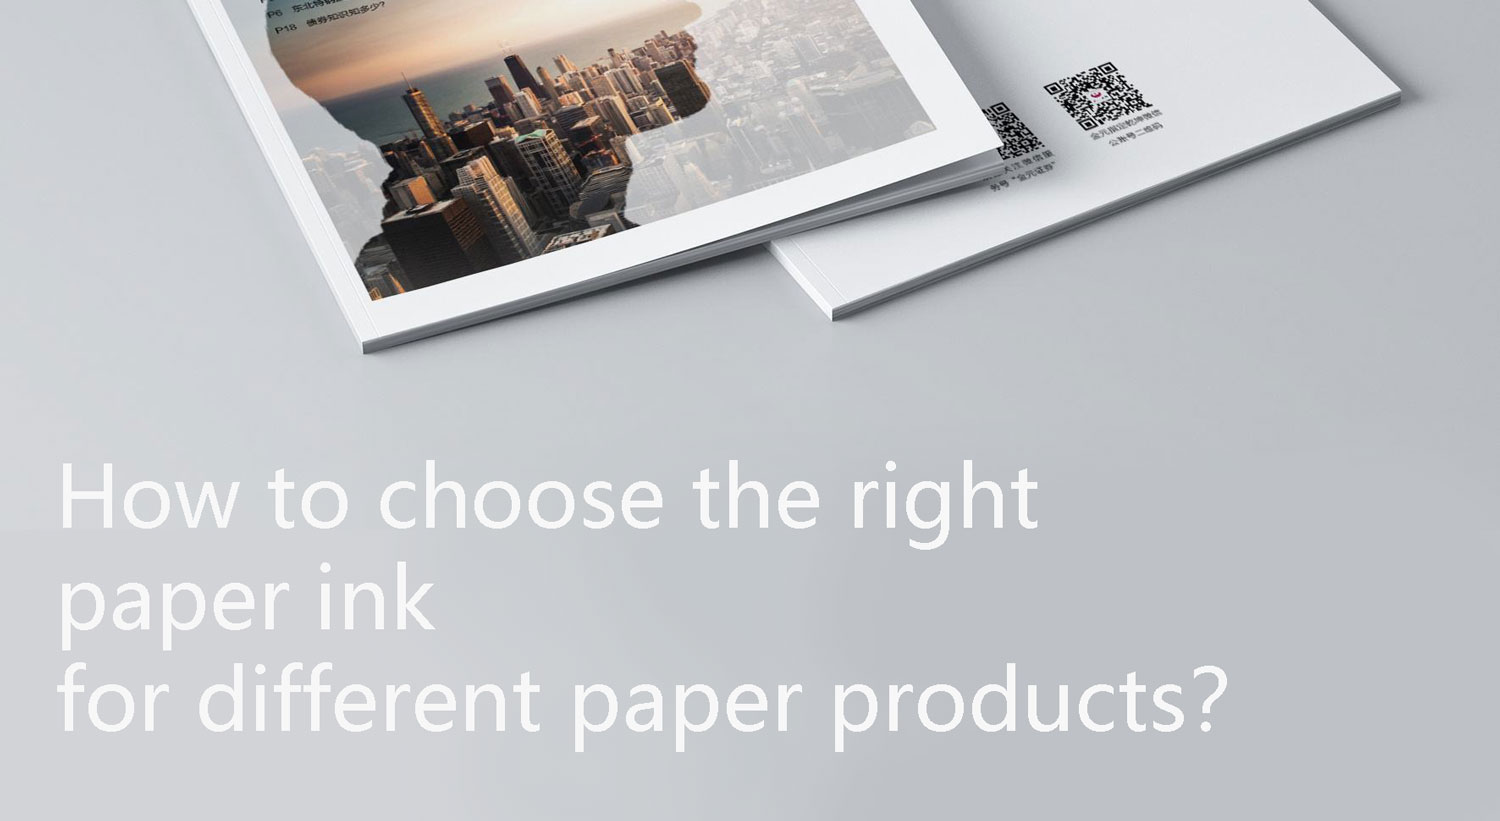 ¿Cómo elegir la tinta de papel adecuada para diferentes productos de papel?